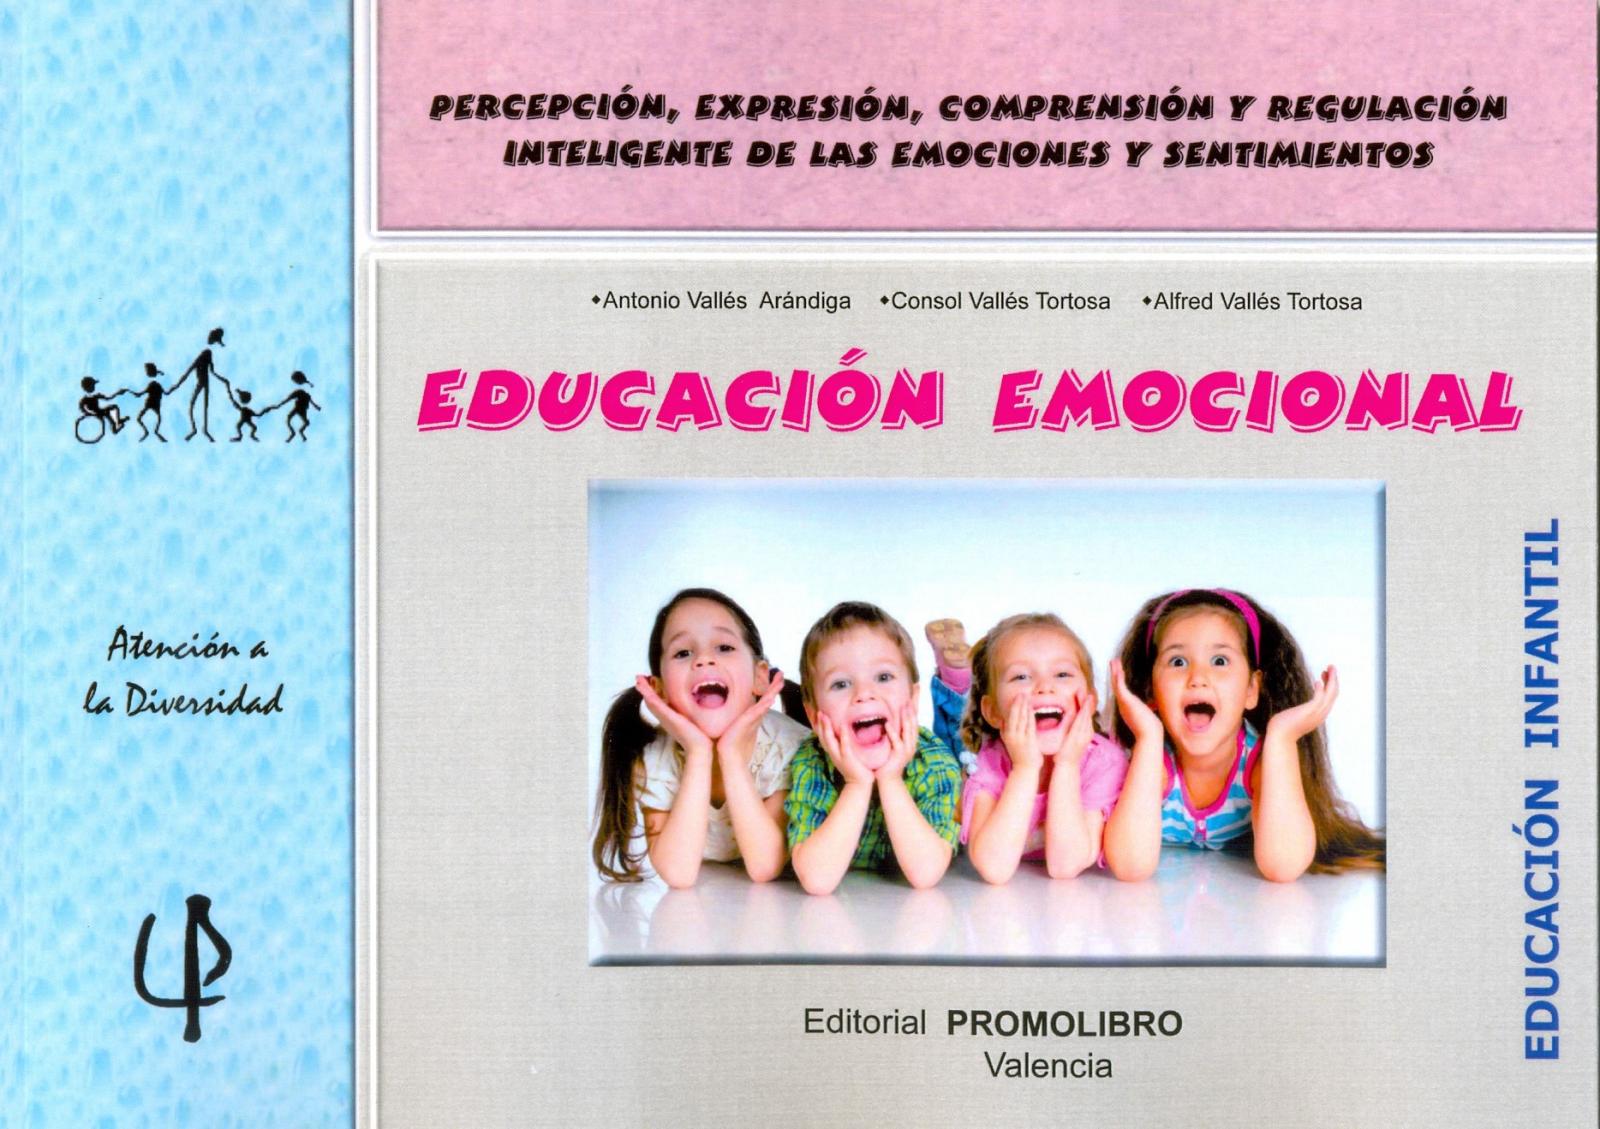 217.-EDUCACIÓN EMOCIONAL.  Percepción, expresión, comprensión y regulación inteligente de las emociones y sentimientos. Educación Infantil